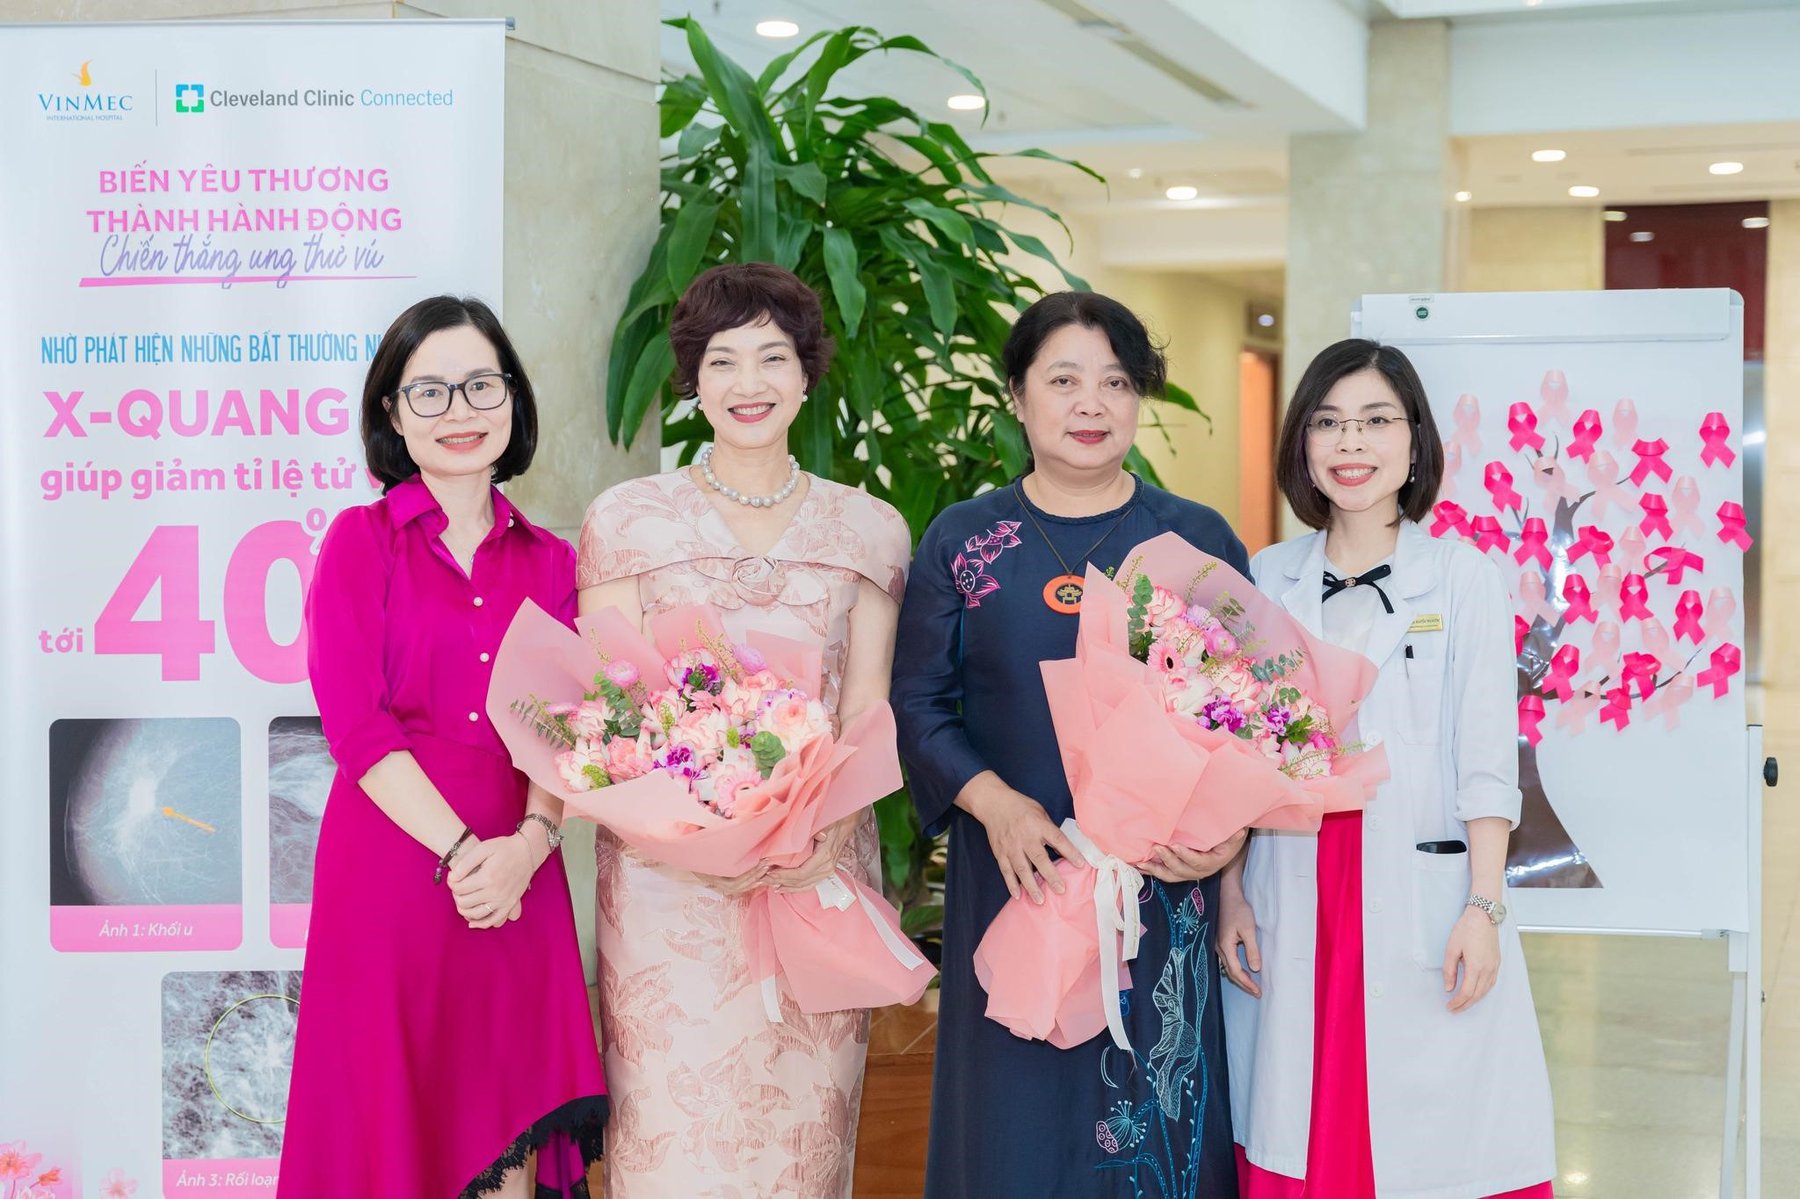 Buổi lễ còn nhận được sự tham gia của nhiều chuyên gia y tế trong ngành và Phó chủ tịch thường trực Hội liên hiệp phụ nữ Thành phố Hà Nội - bà Nguyễn Thị Thu Thủy